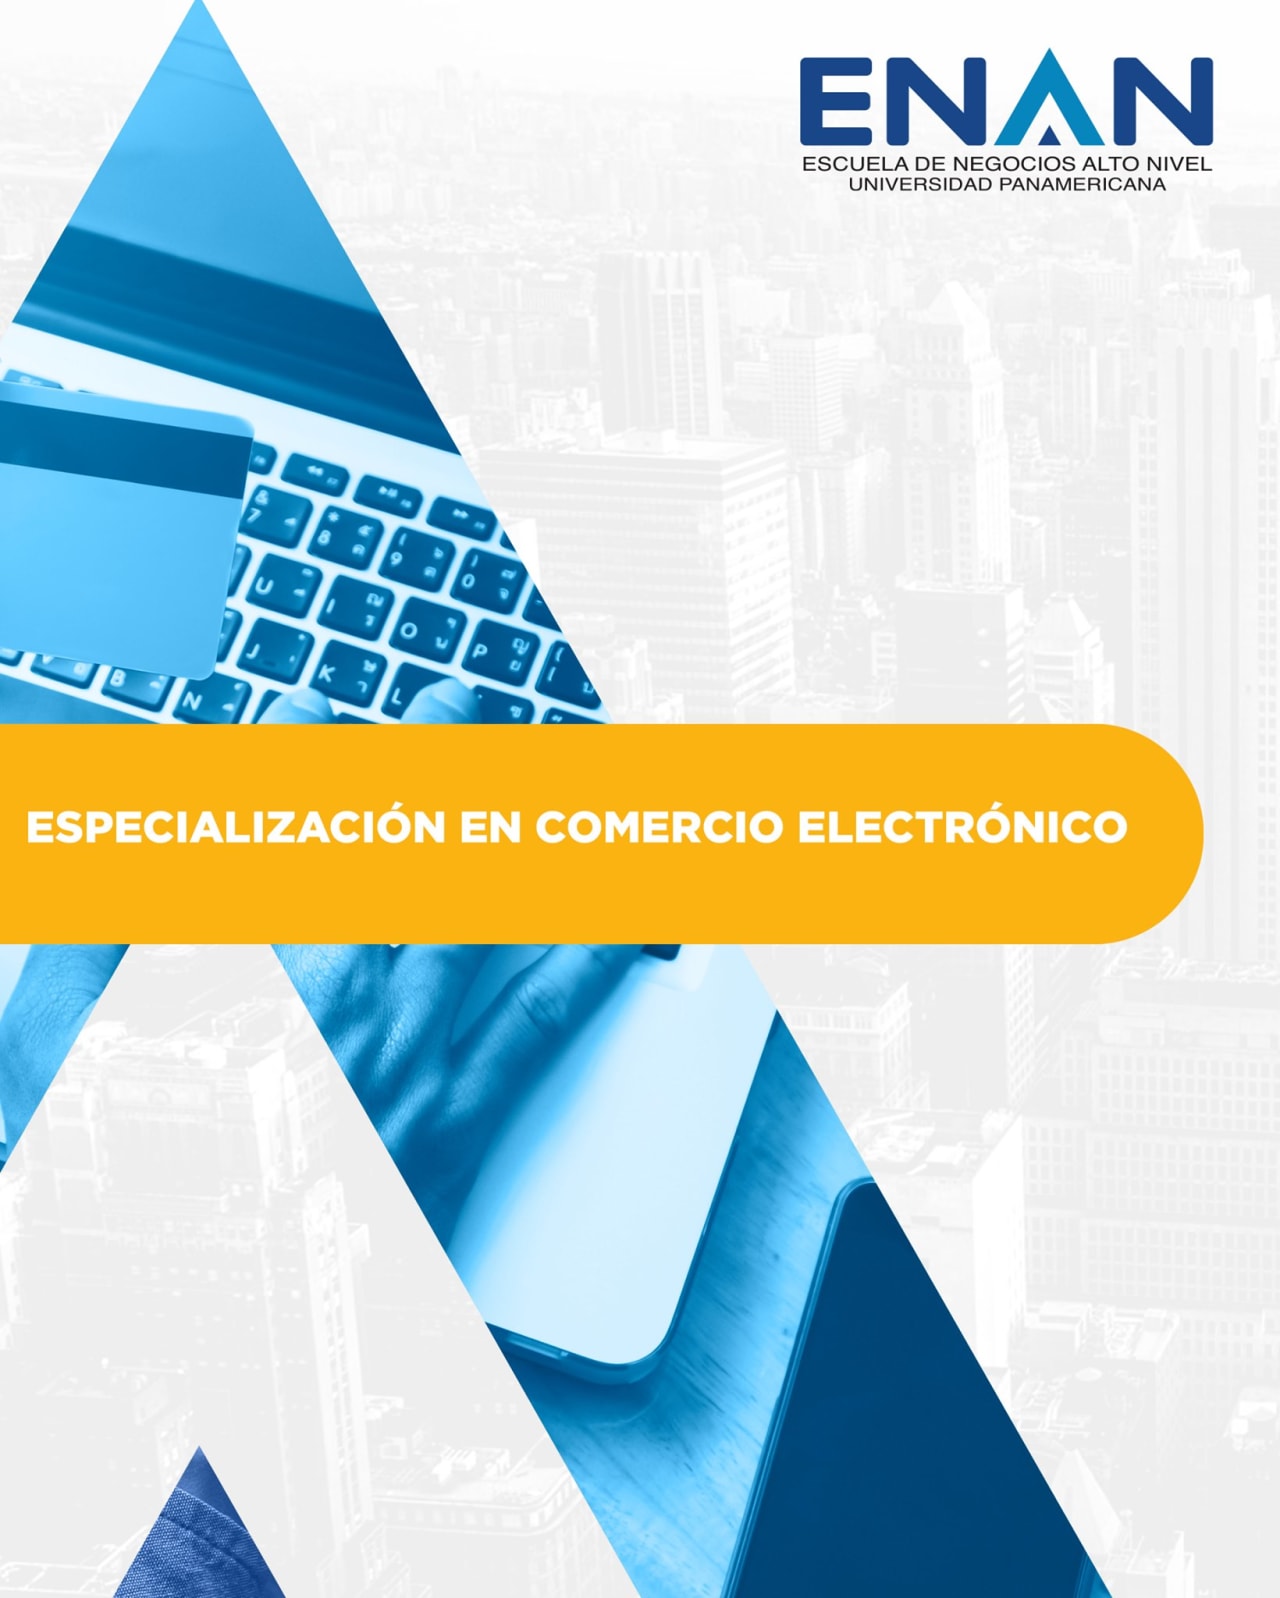 Escuela de Negocios Alto Nivel - Universidad Panamericana de Guatemala Especialização em Comércio Eletrônico